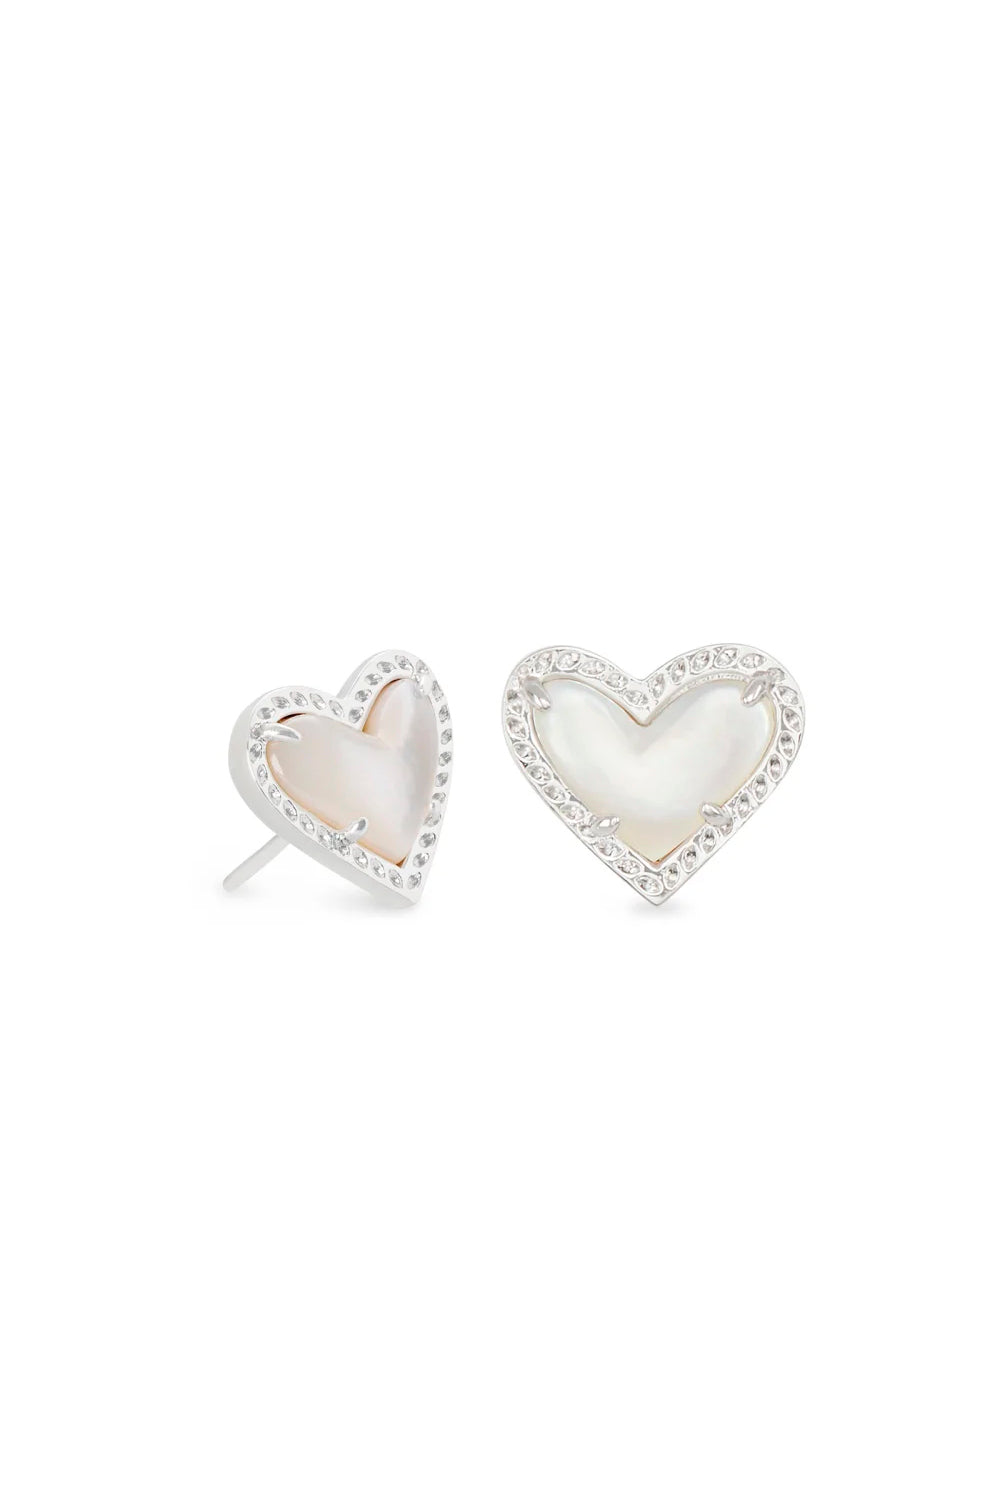 Kendra Scott: Ari Heart Silver Stud Earrings - Ivory Mother-of-Pearl | Makk Fashions